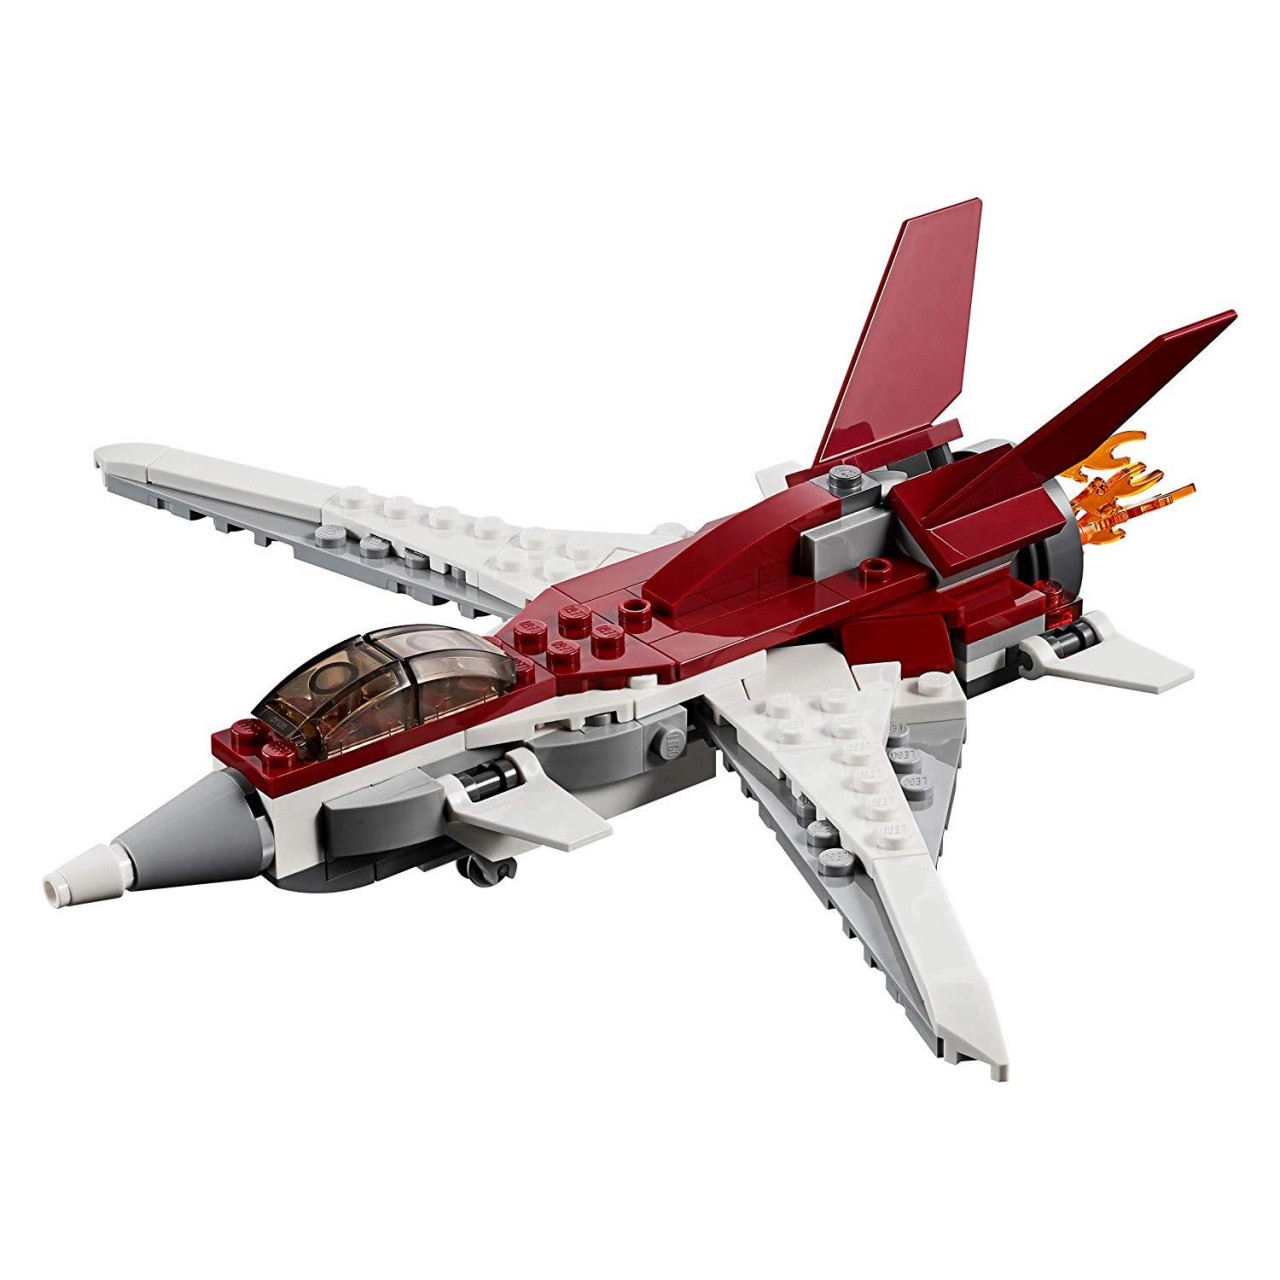 LEGO CREATOR 31086 Flugzeug der Zukunft